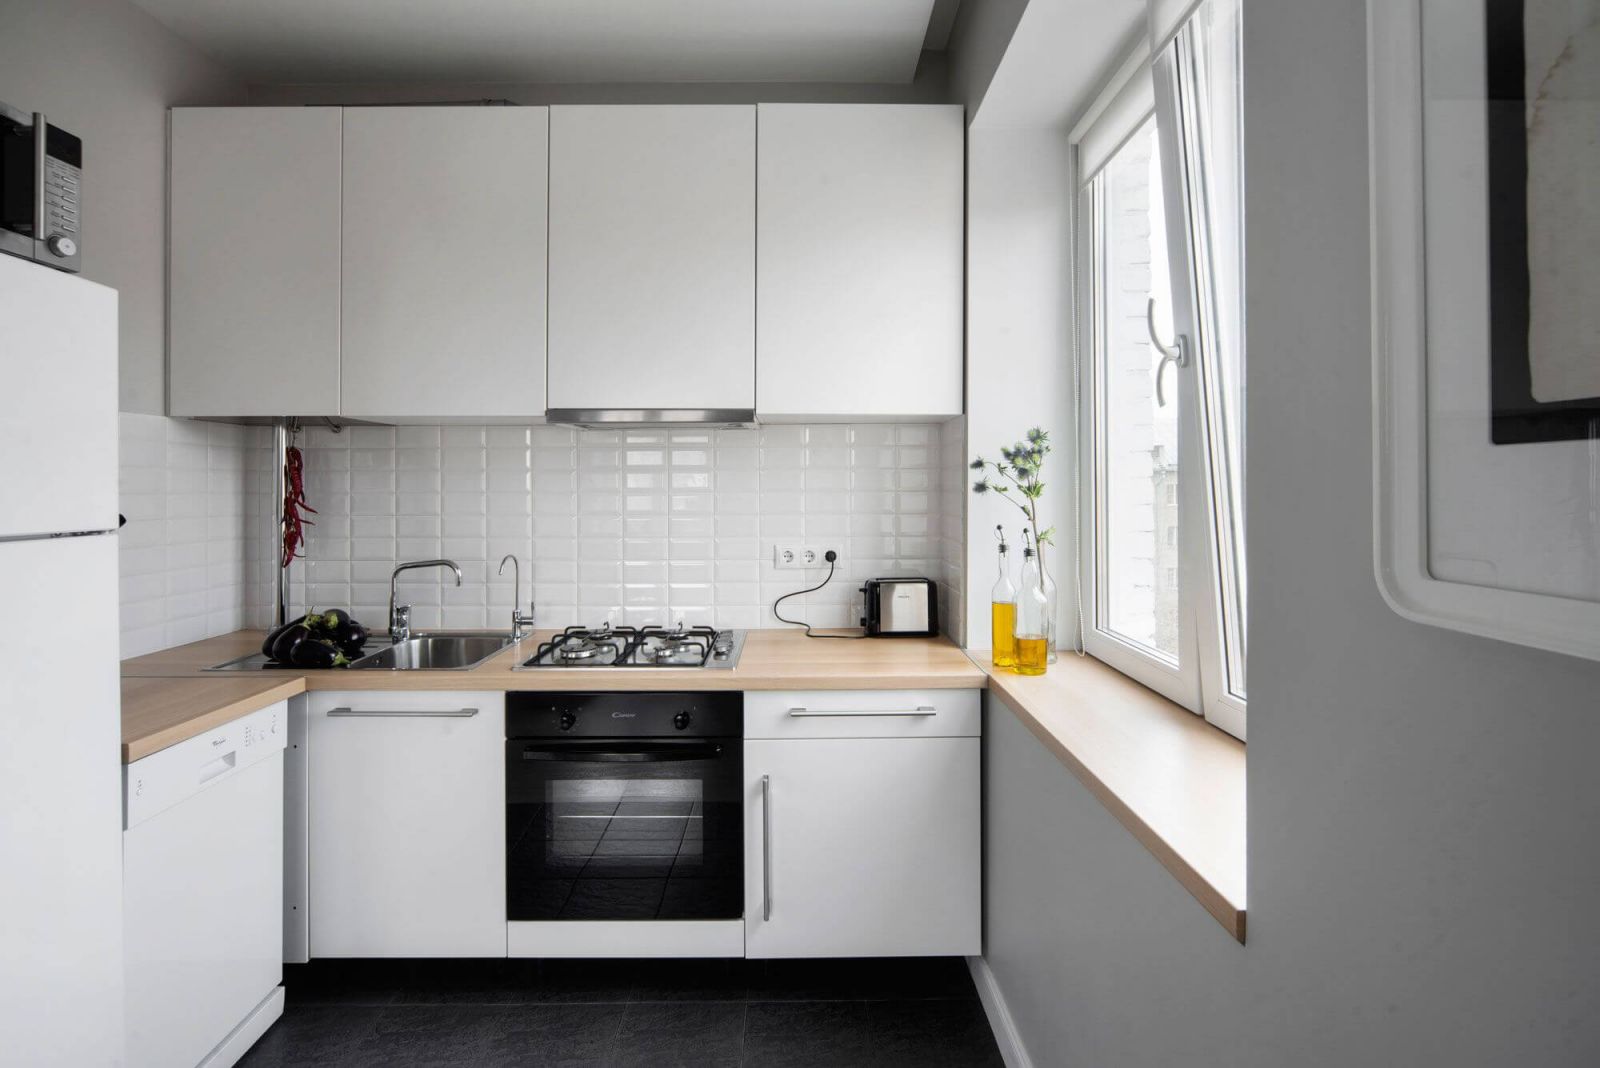 Дизайн кухни 6 кв м - фото новинки 2019 года